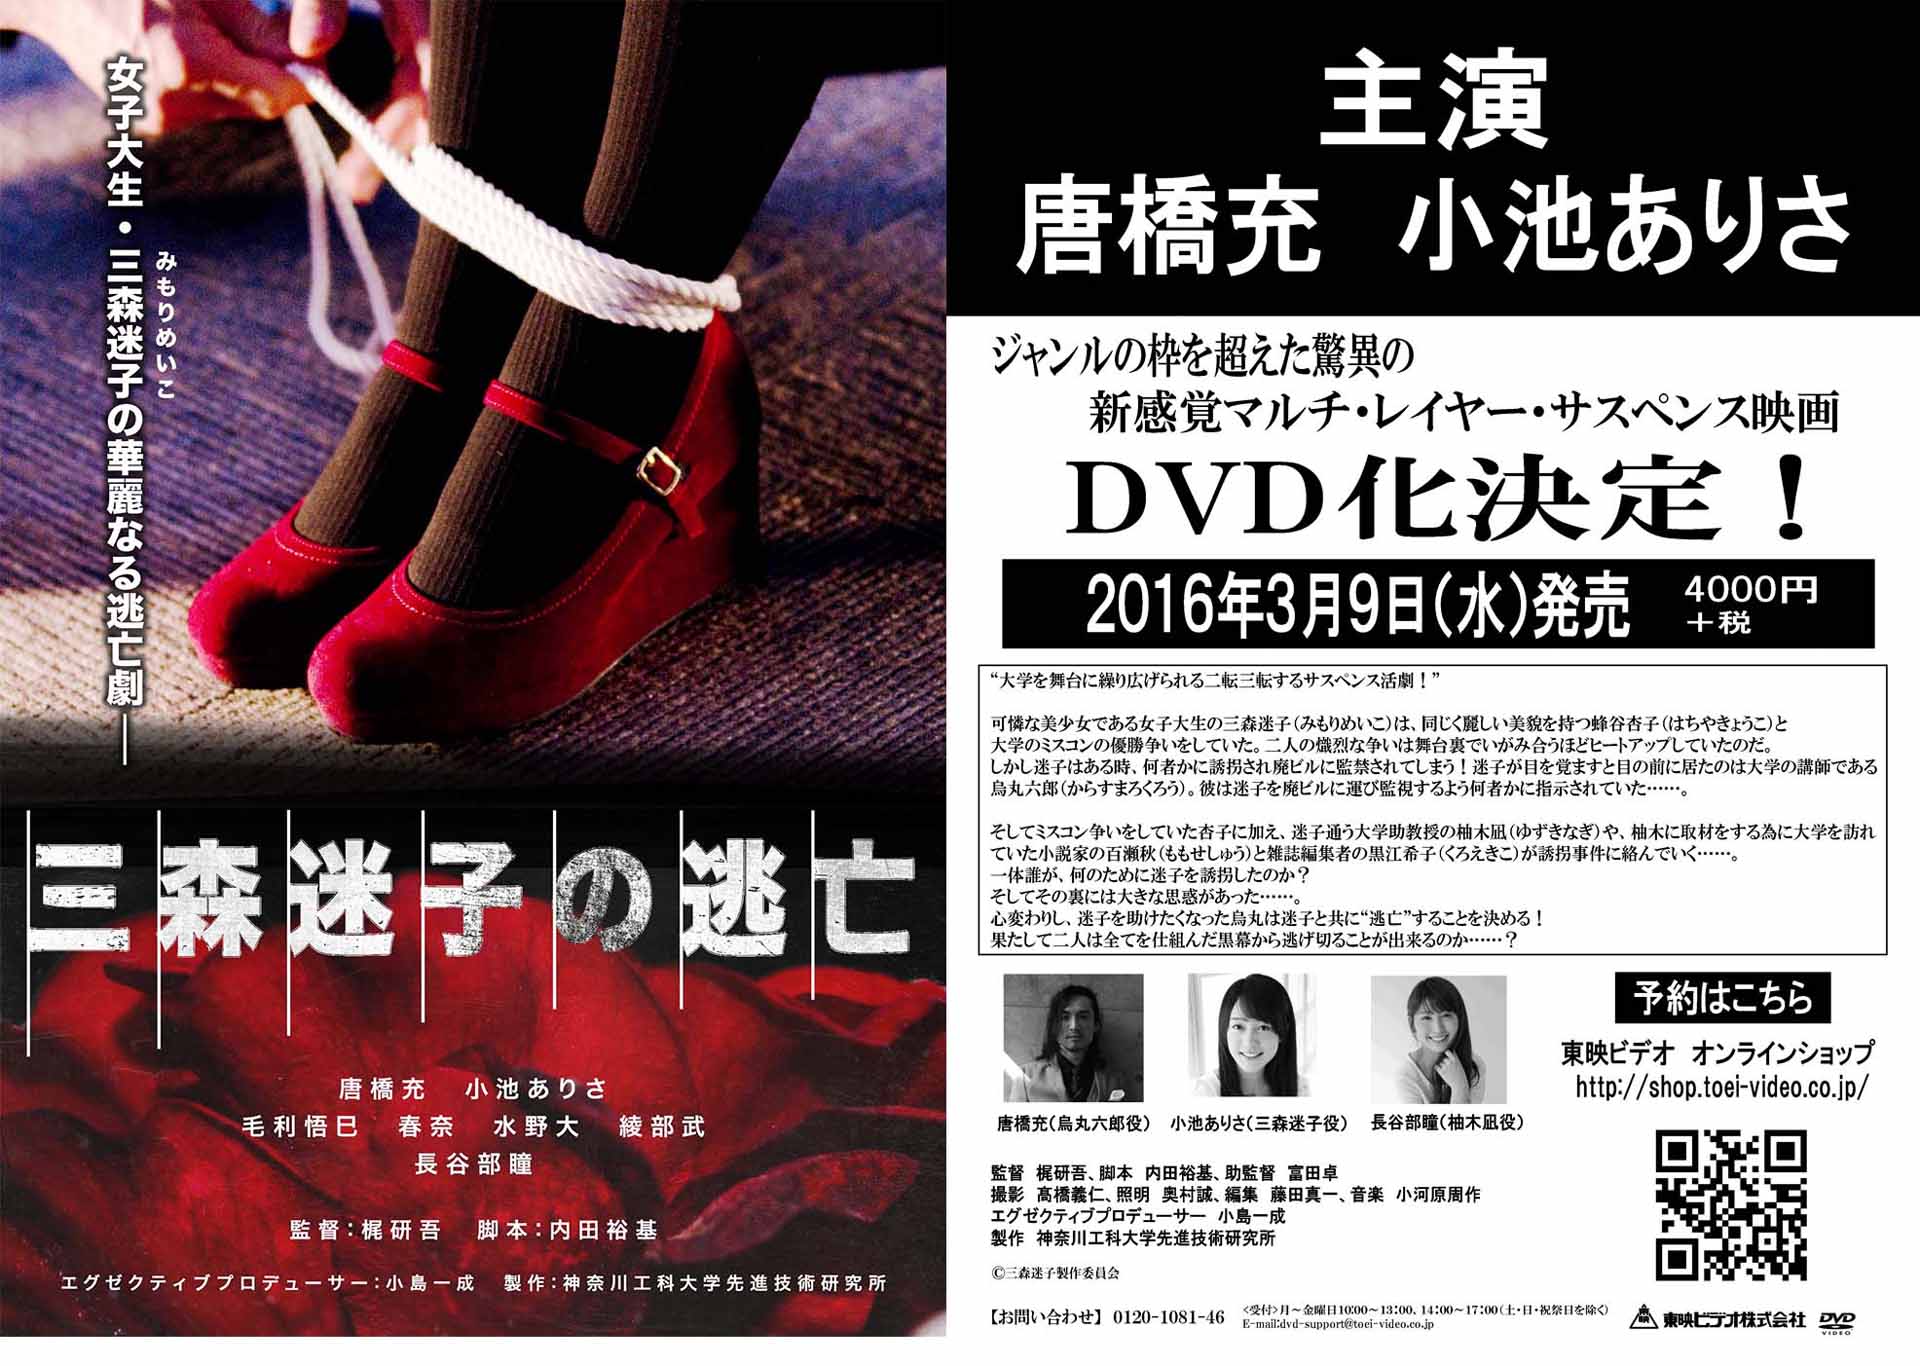 神奈川工科大学先進技術研究所製作の映画「三森迷子の逃亡」を無料上映